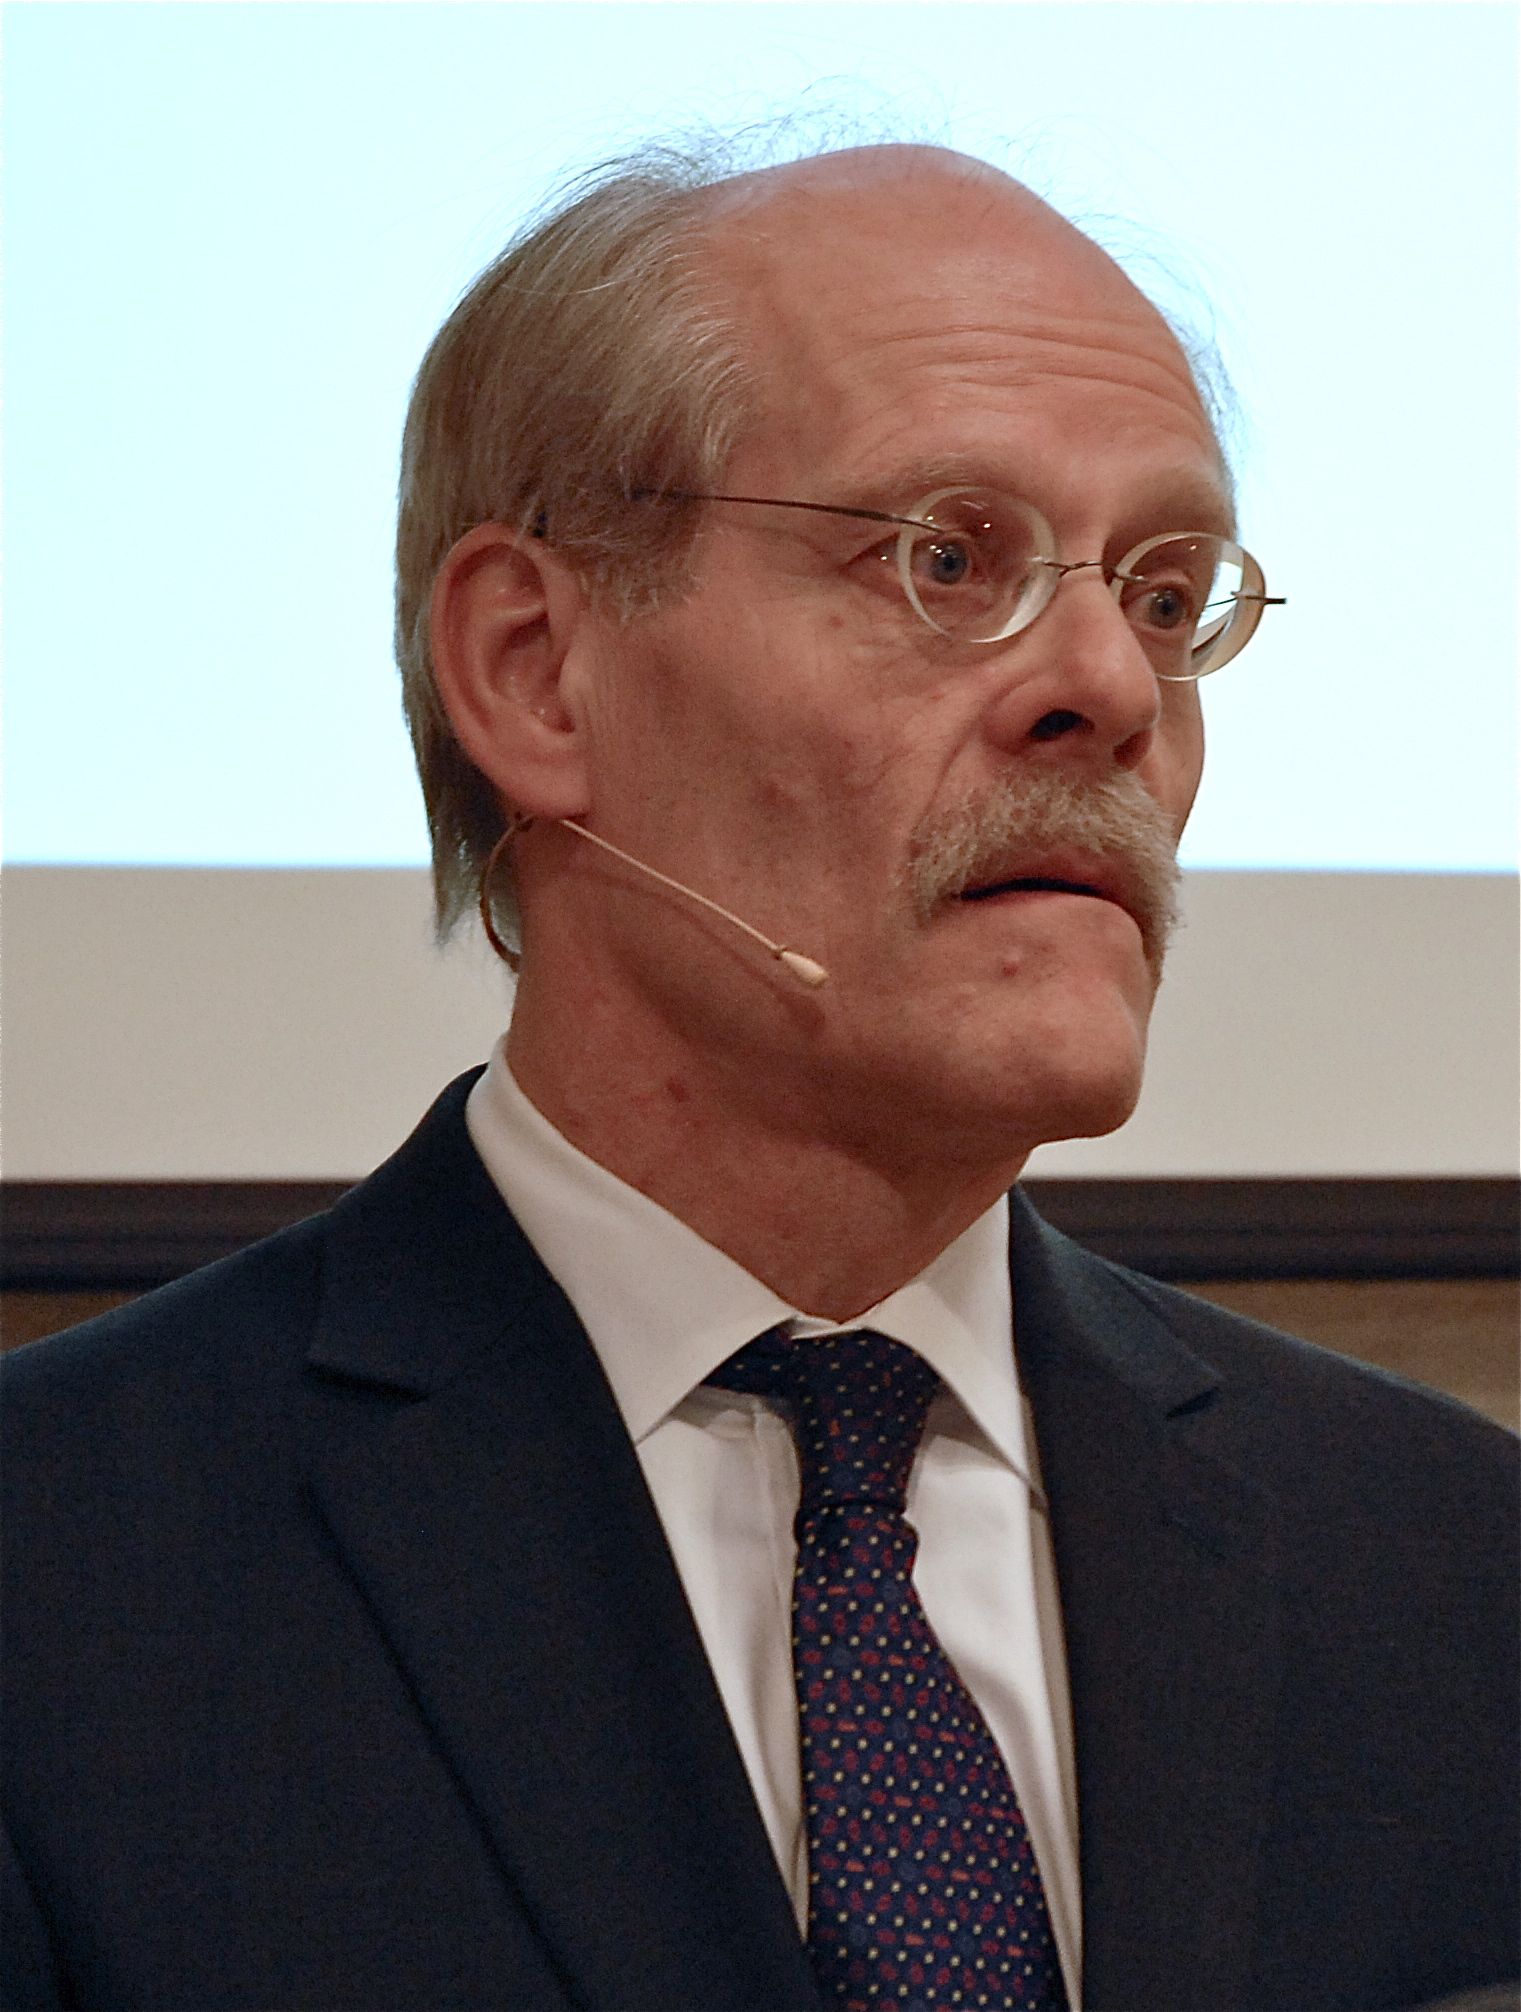 Stefan Ingves, riksbanksschef